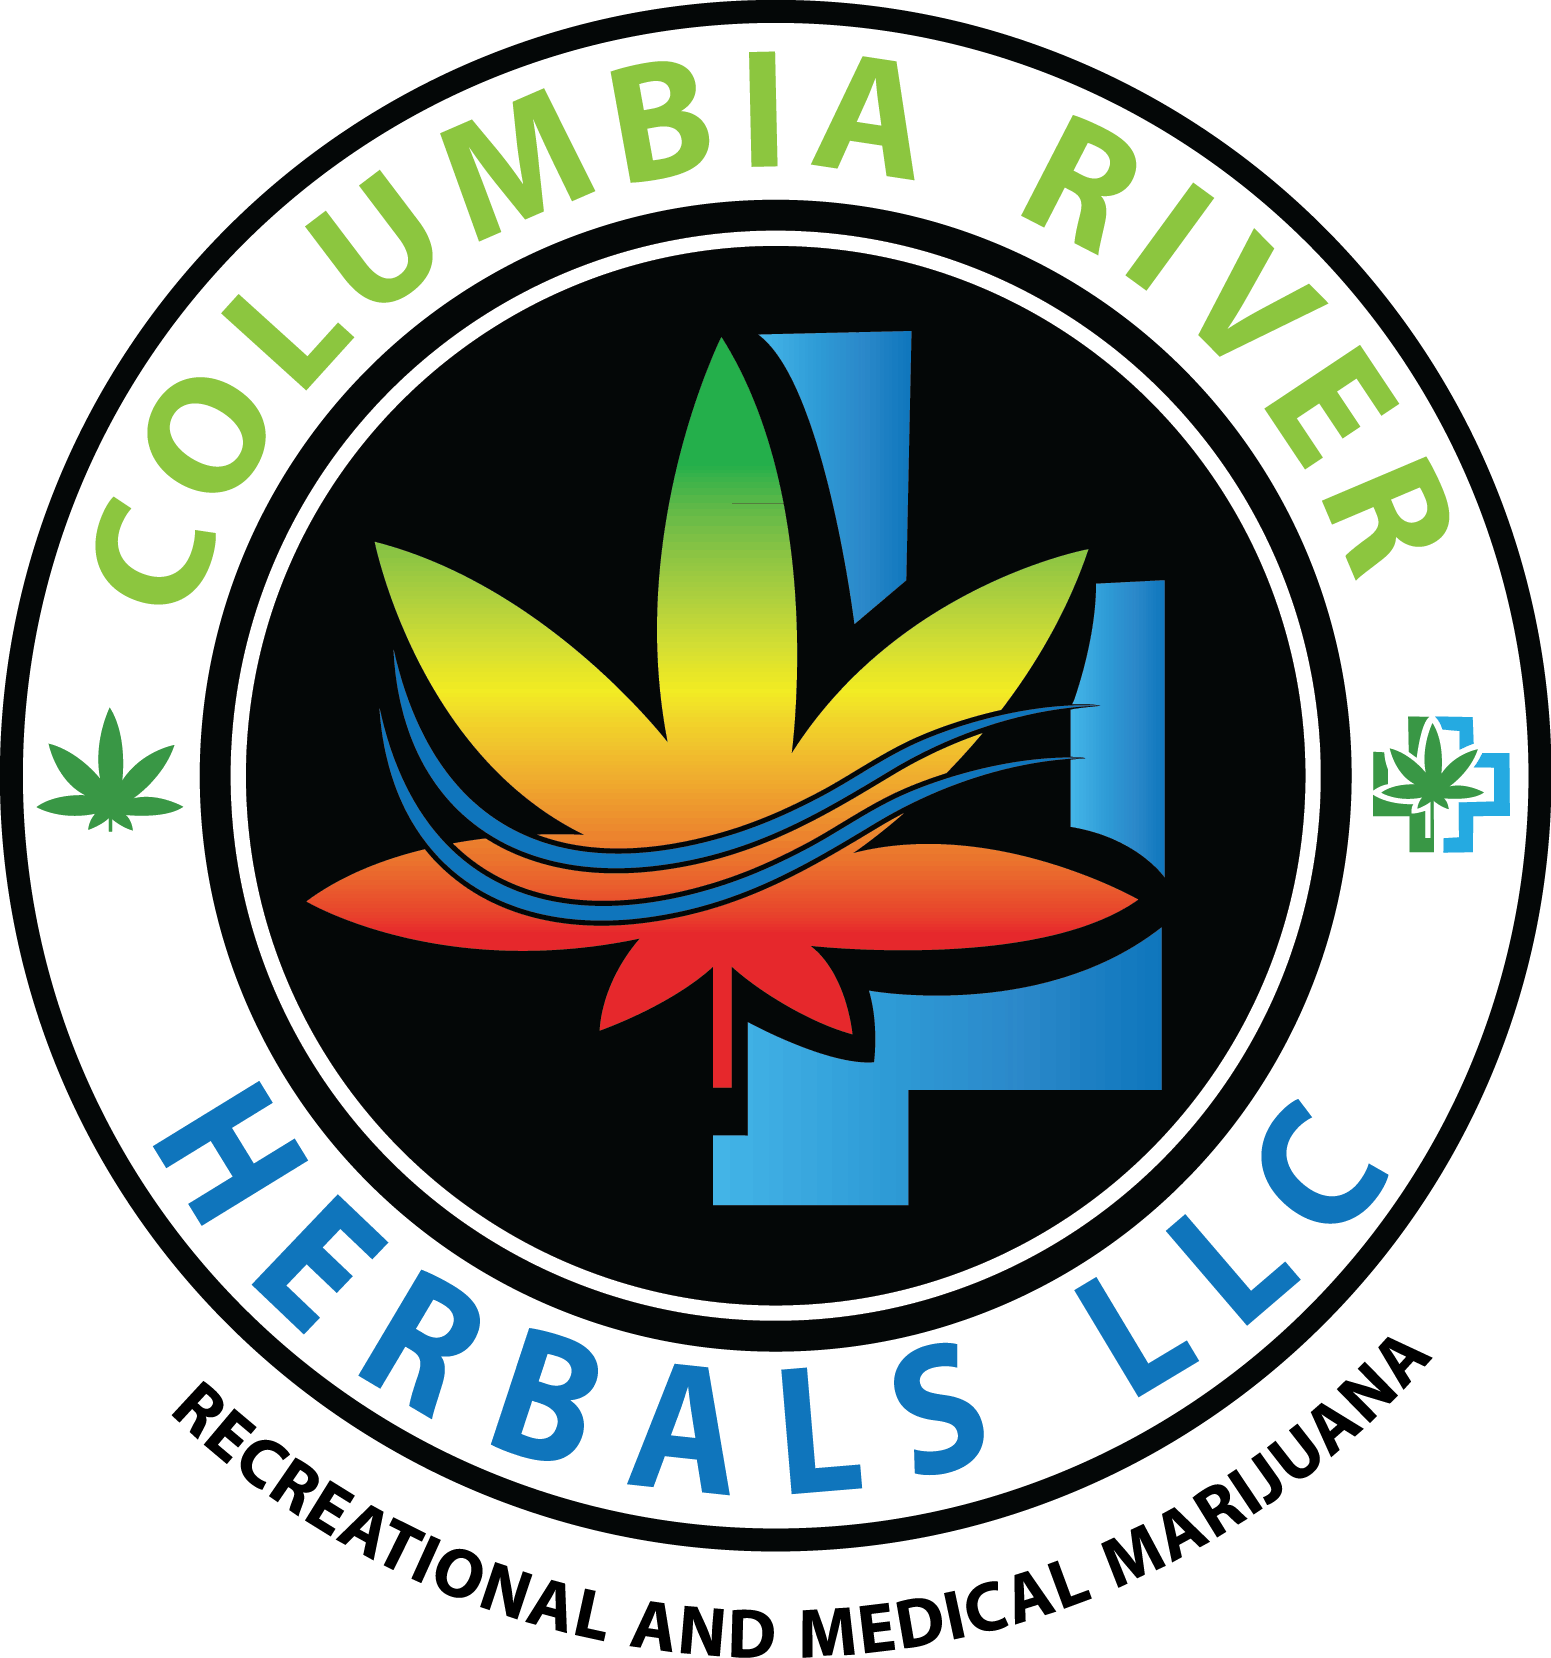 Columbia River Herbals - East - Medical Marijuana Doctors - Cannabizme.com